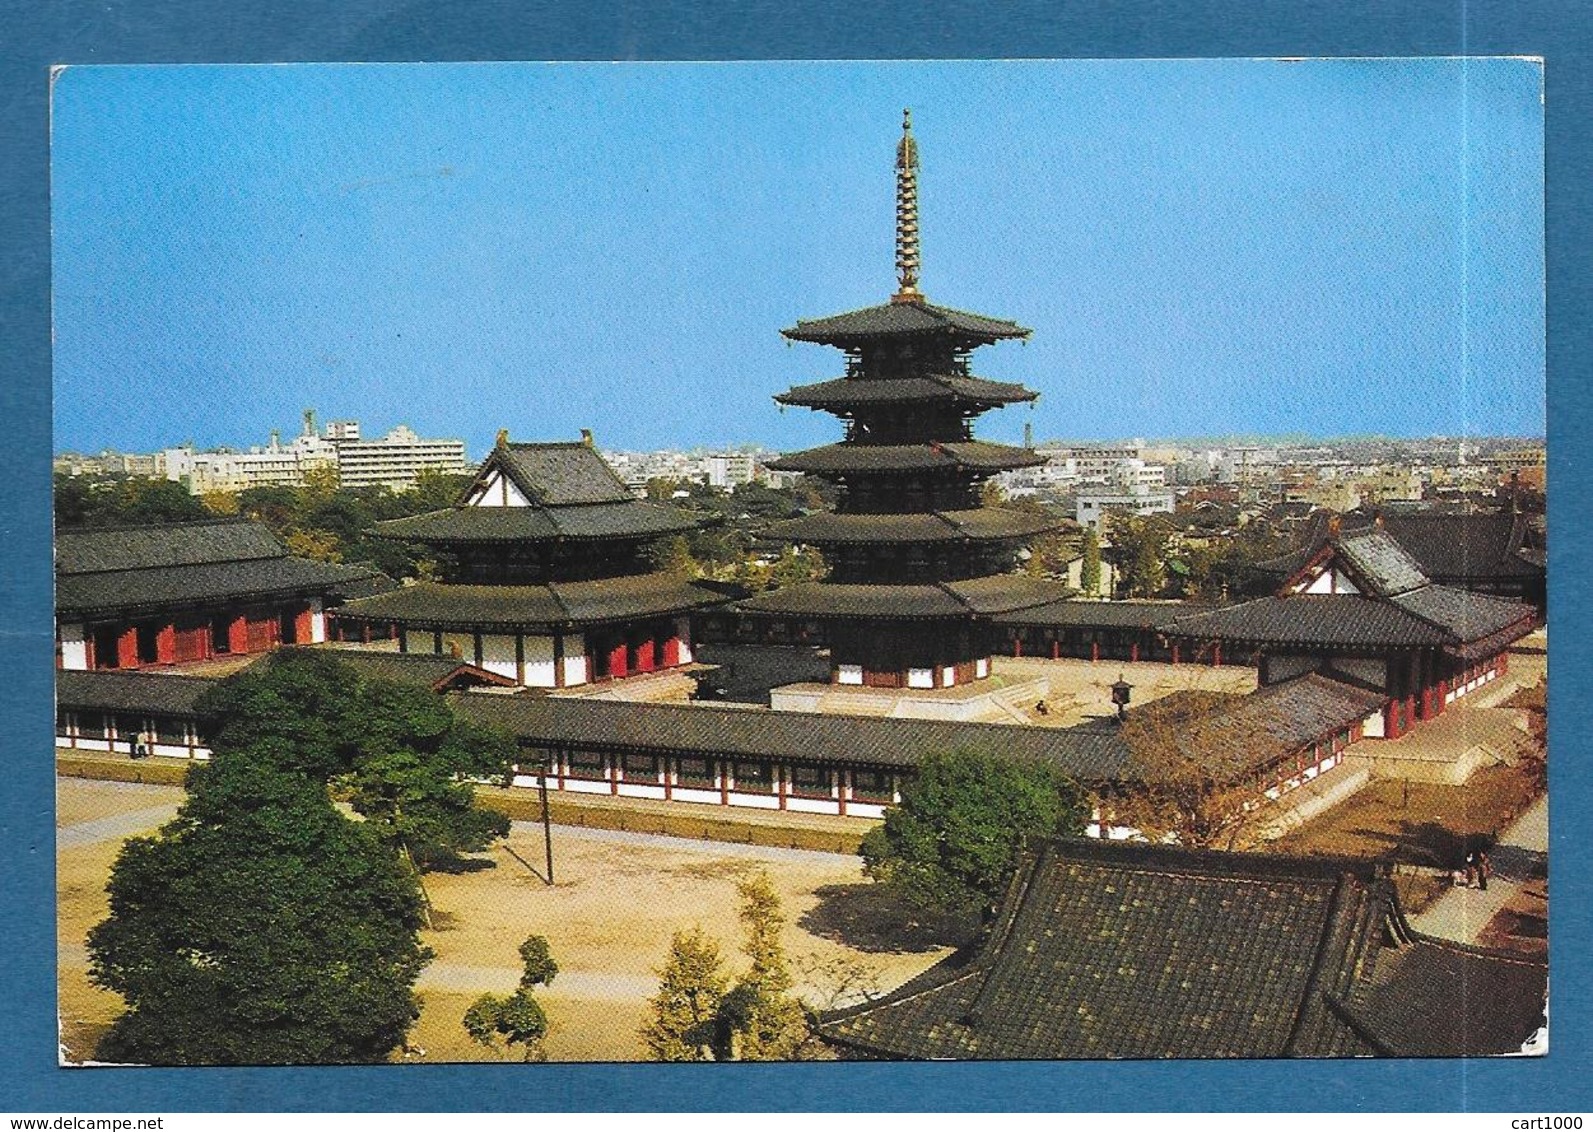 SHITEN-NO-JI TEMPLE OSAKA 1971 - Osaka